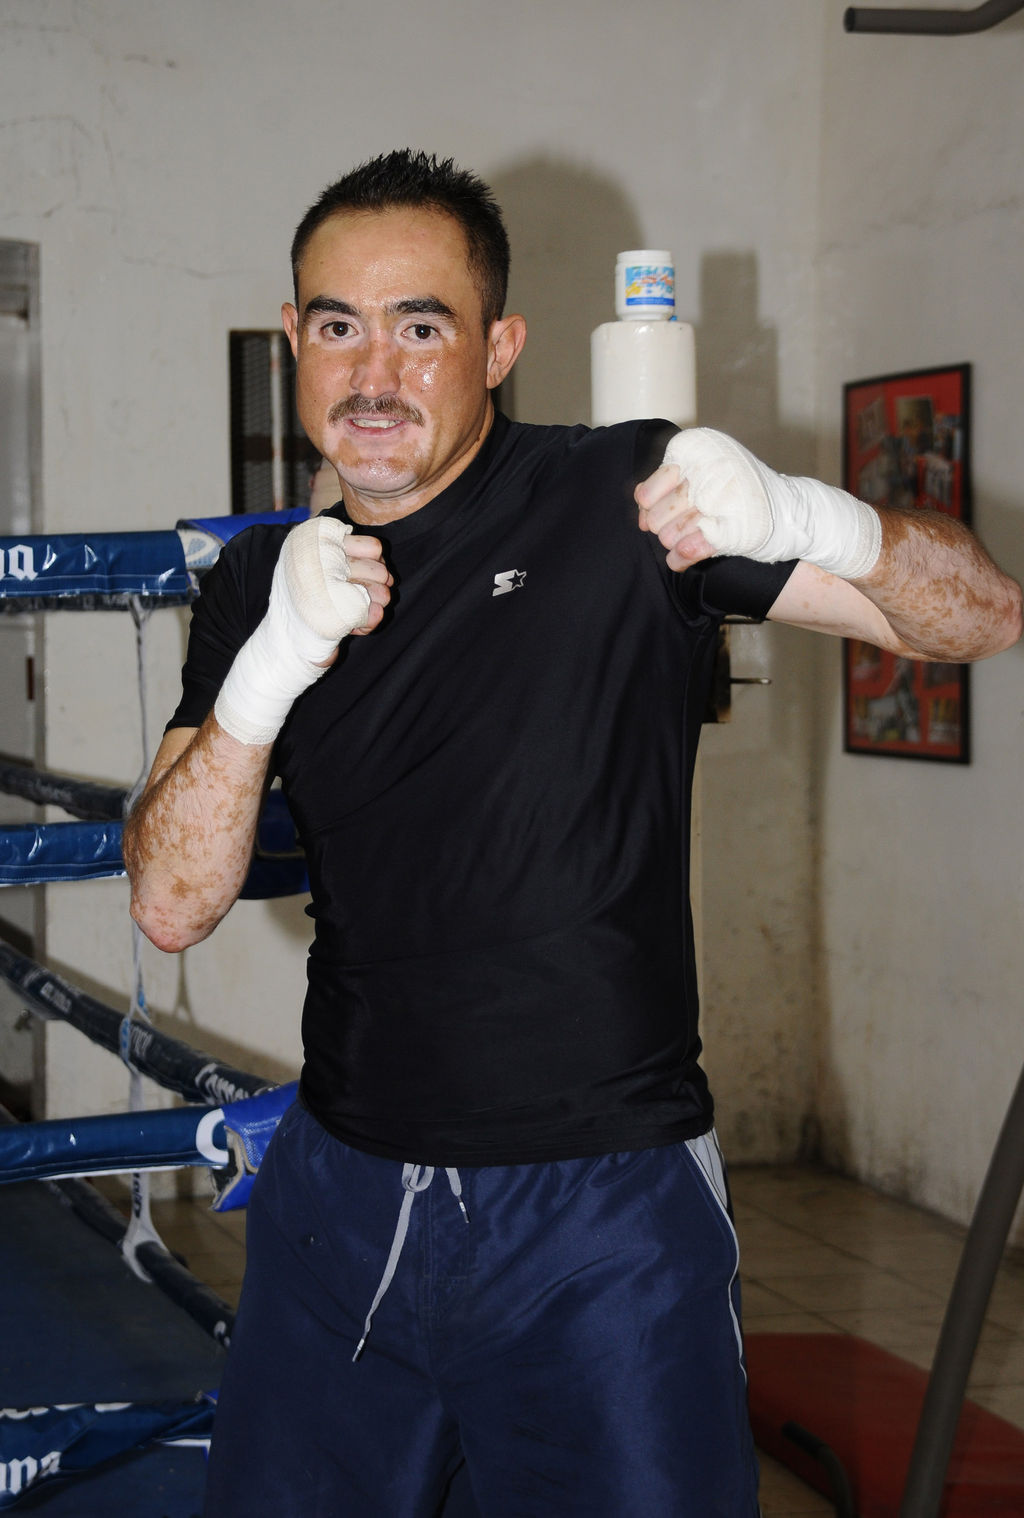 Marco Antonio 'Veneno' Rubio se prepara para su siguiente combate en El Paso, Texas. (Archivo)